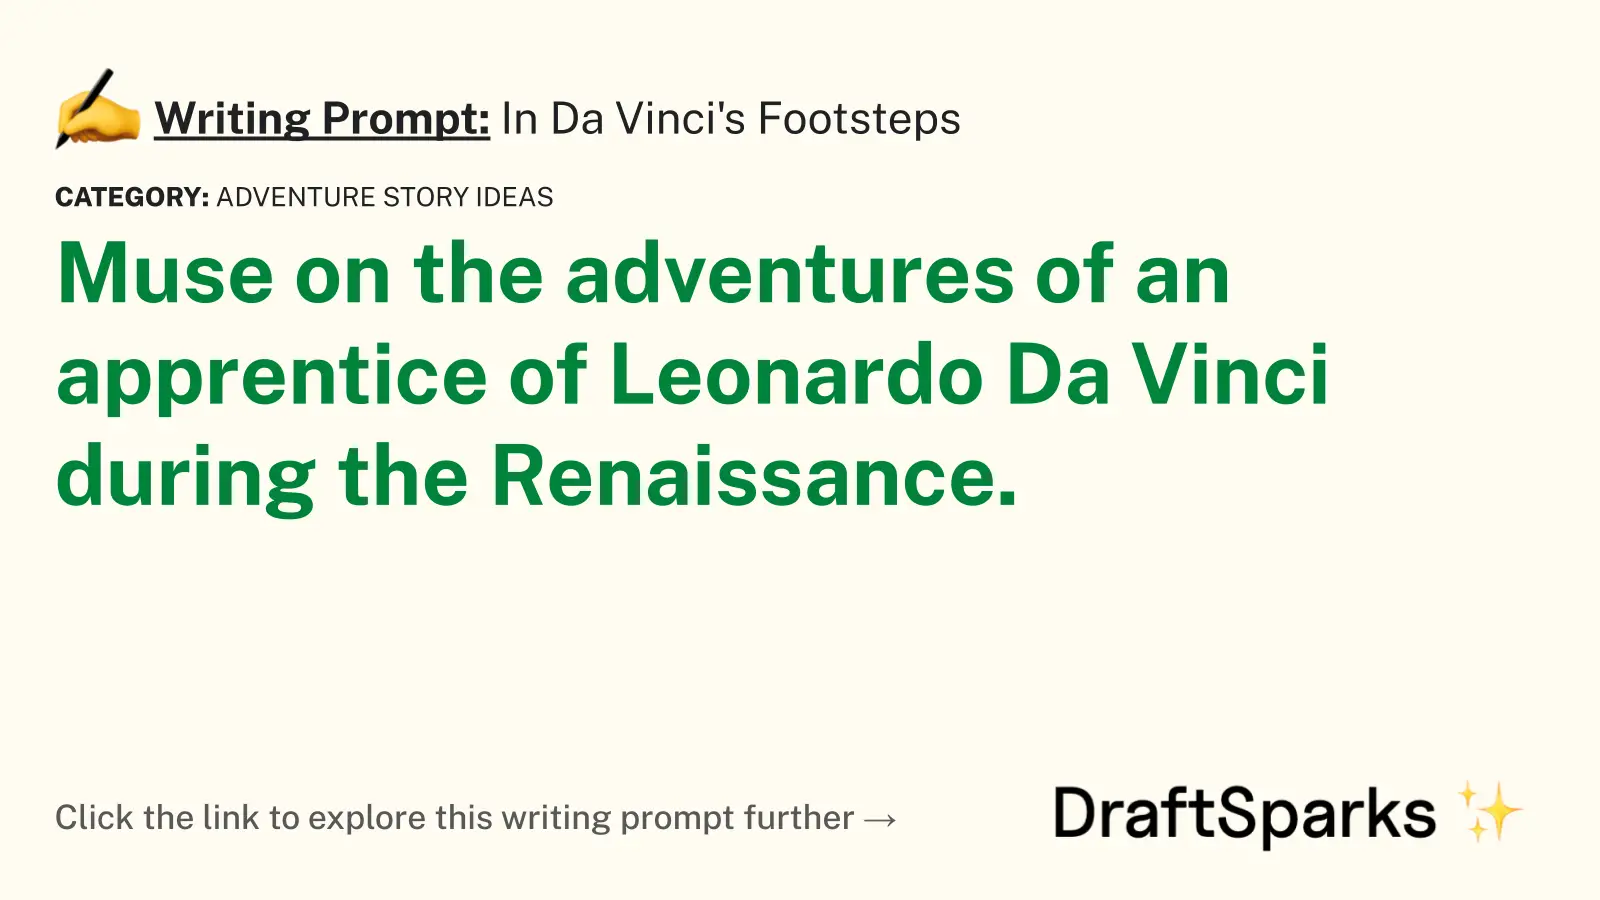 In Da Vinci’s Footsteps